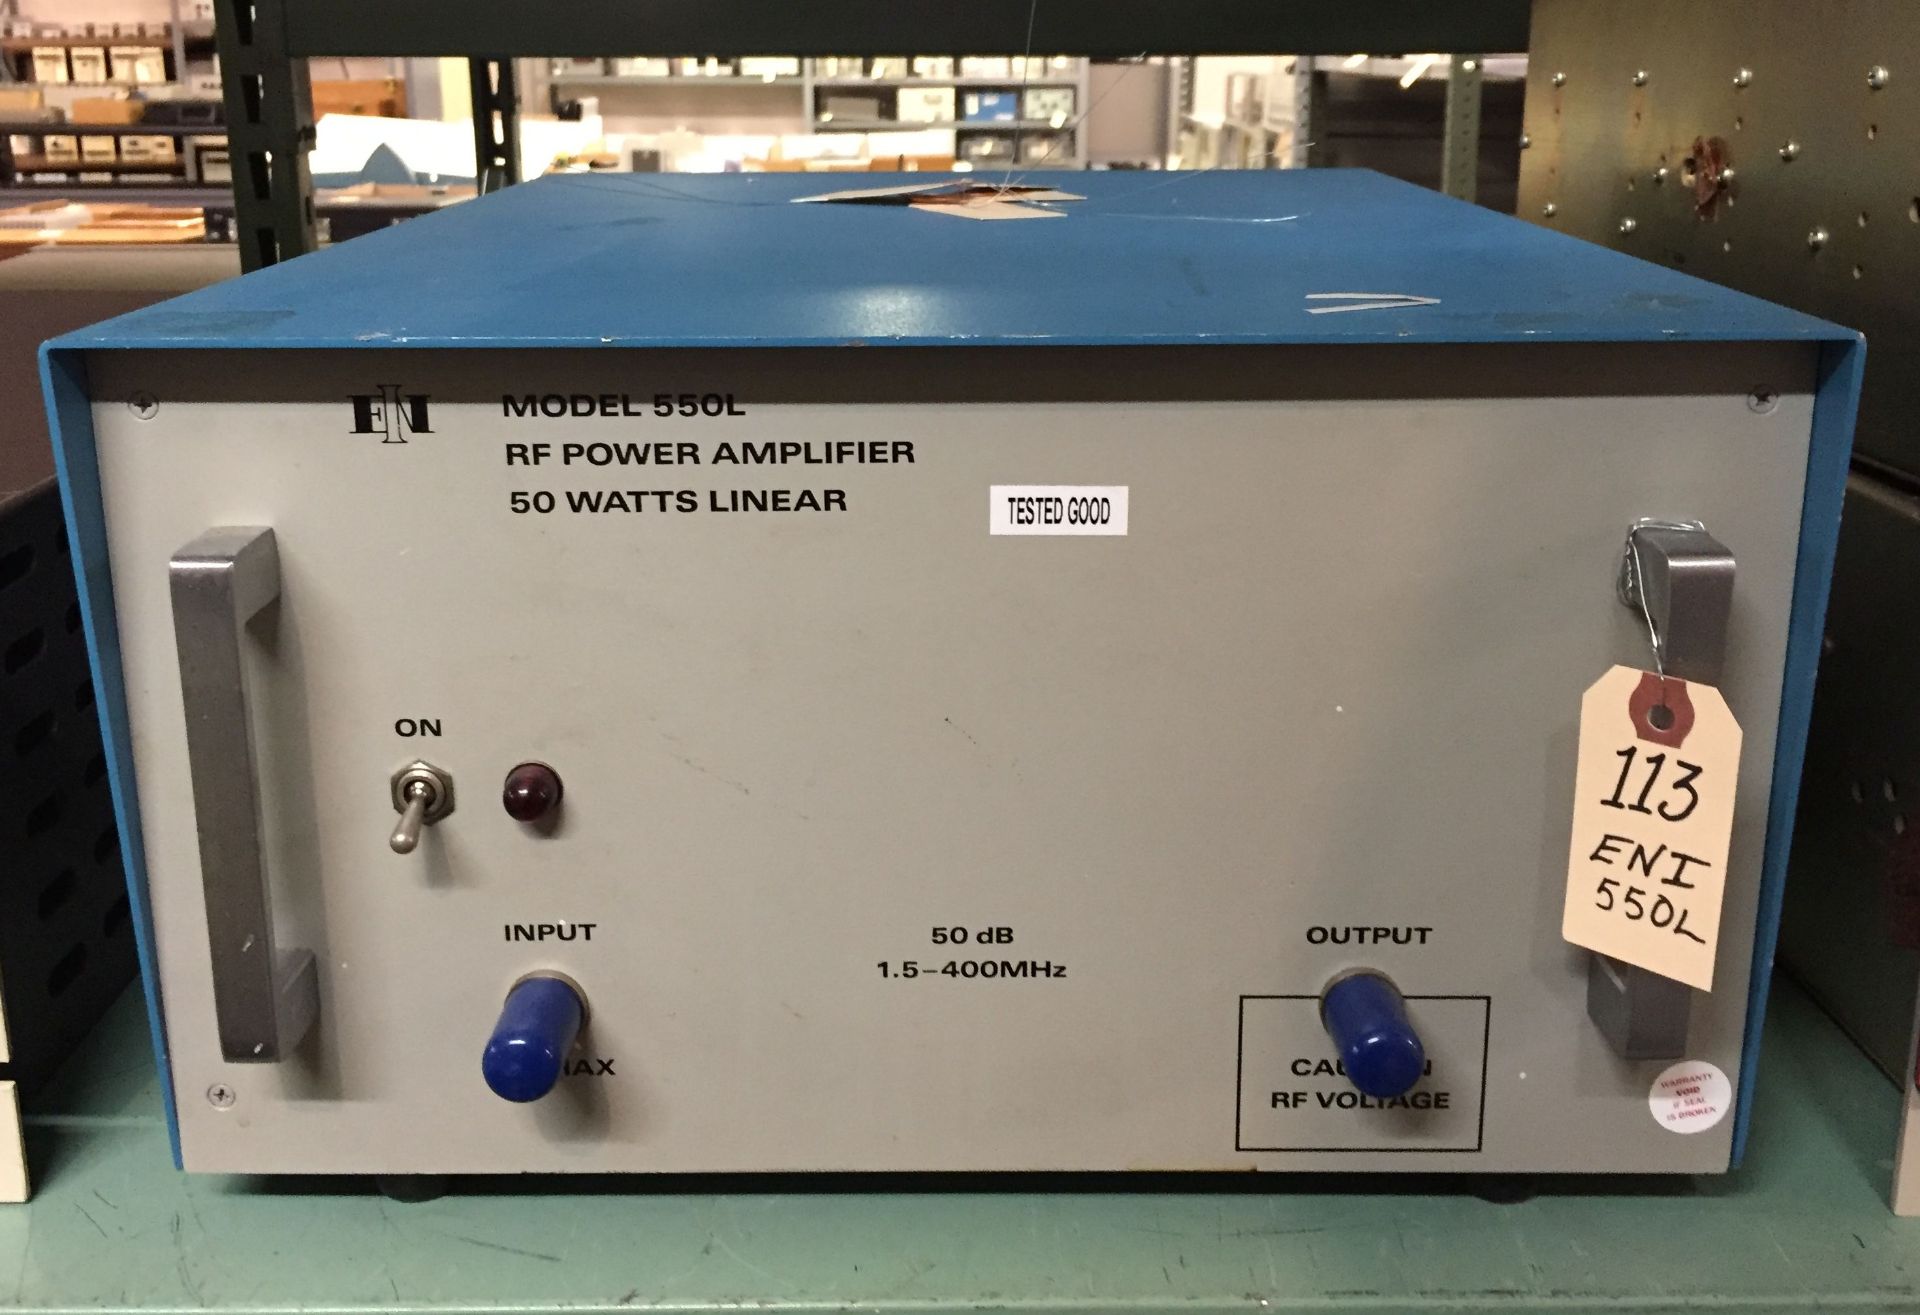 ENI 550L RF Power Amplifier